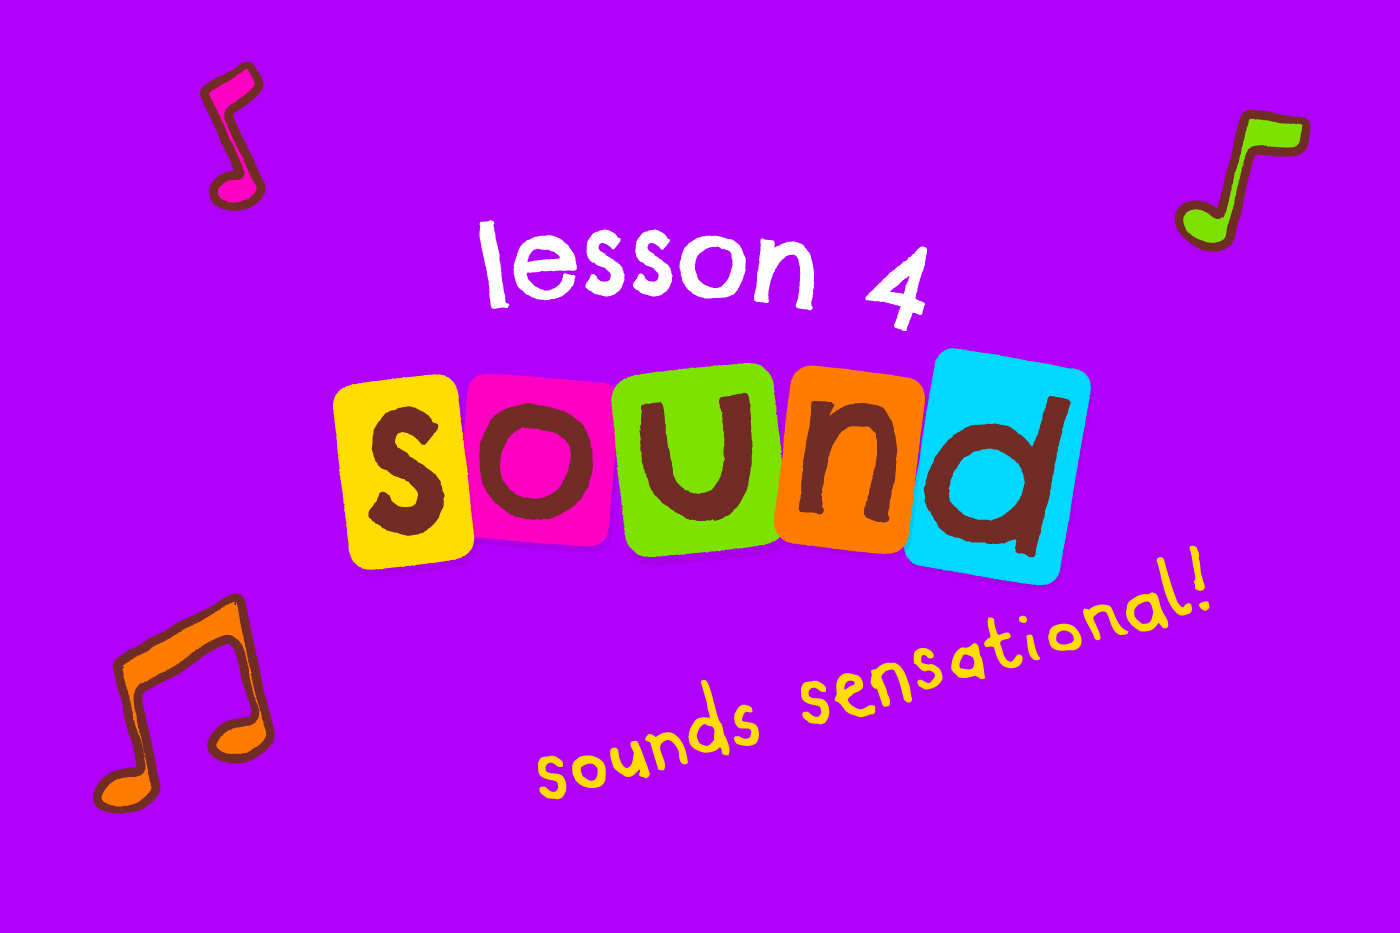 Ellas kitchen lesson4 sound